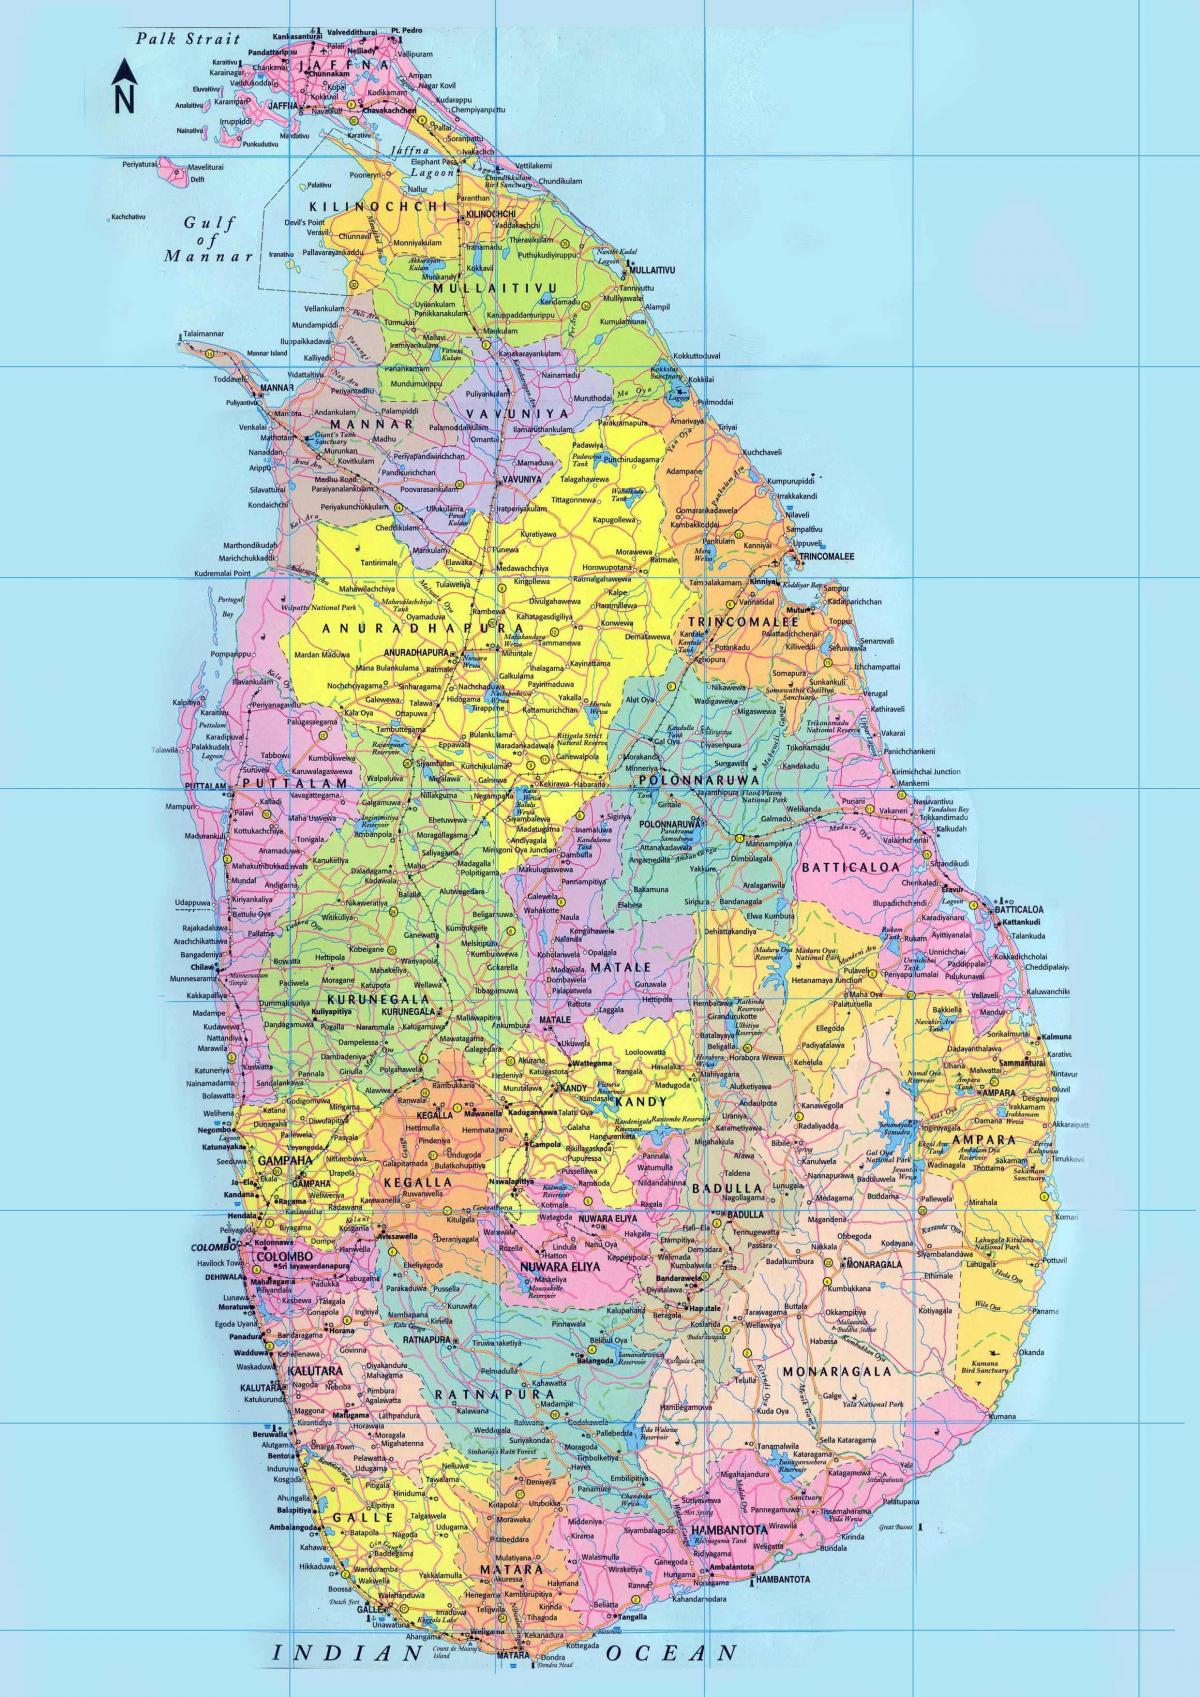 Sri Lanka mappa in singalese - mappa Dettagliata dello Sri Lanka, delle